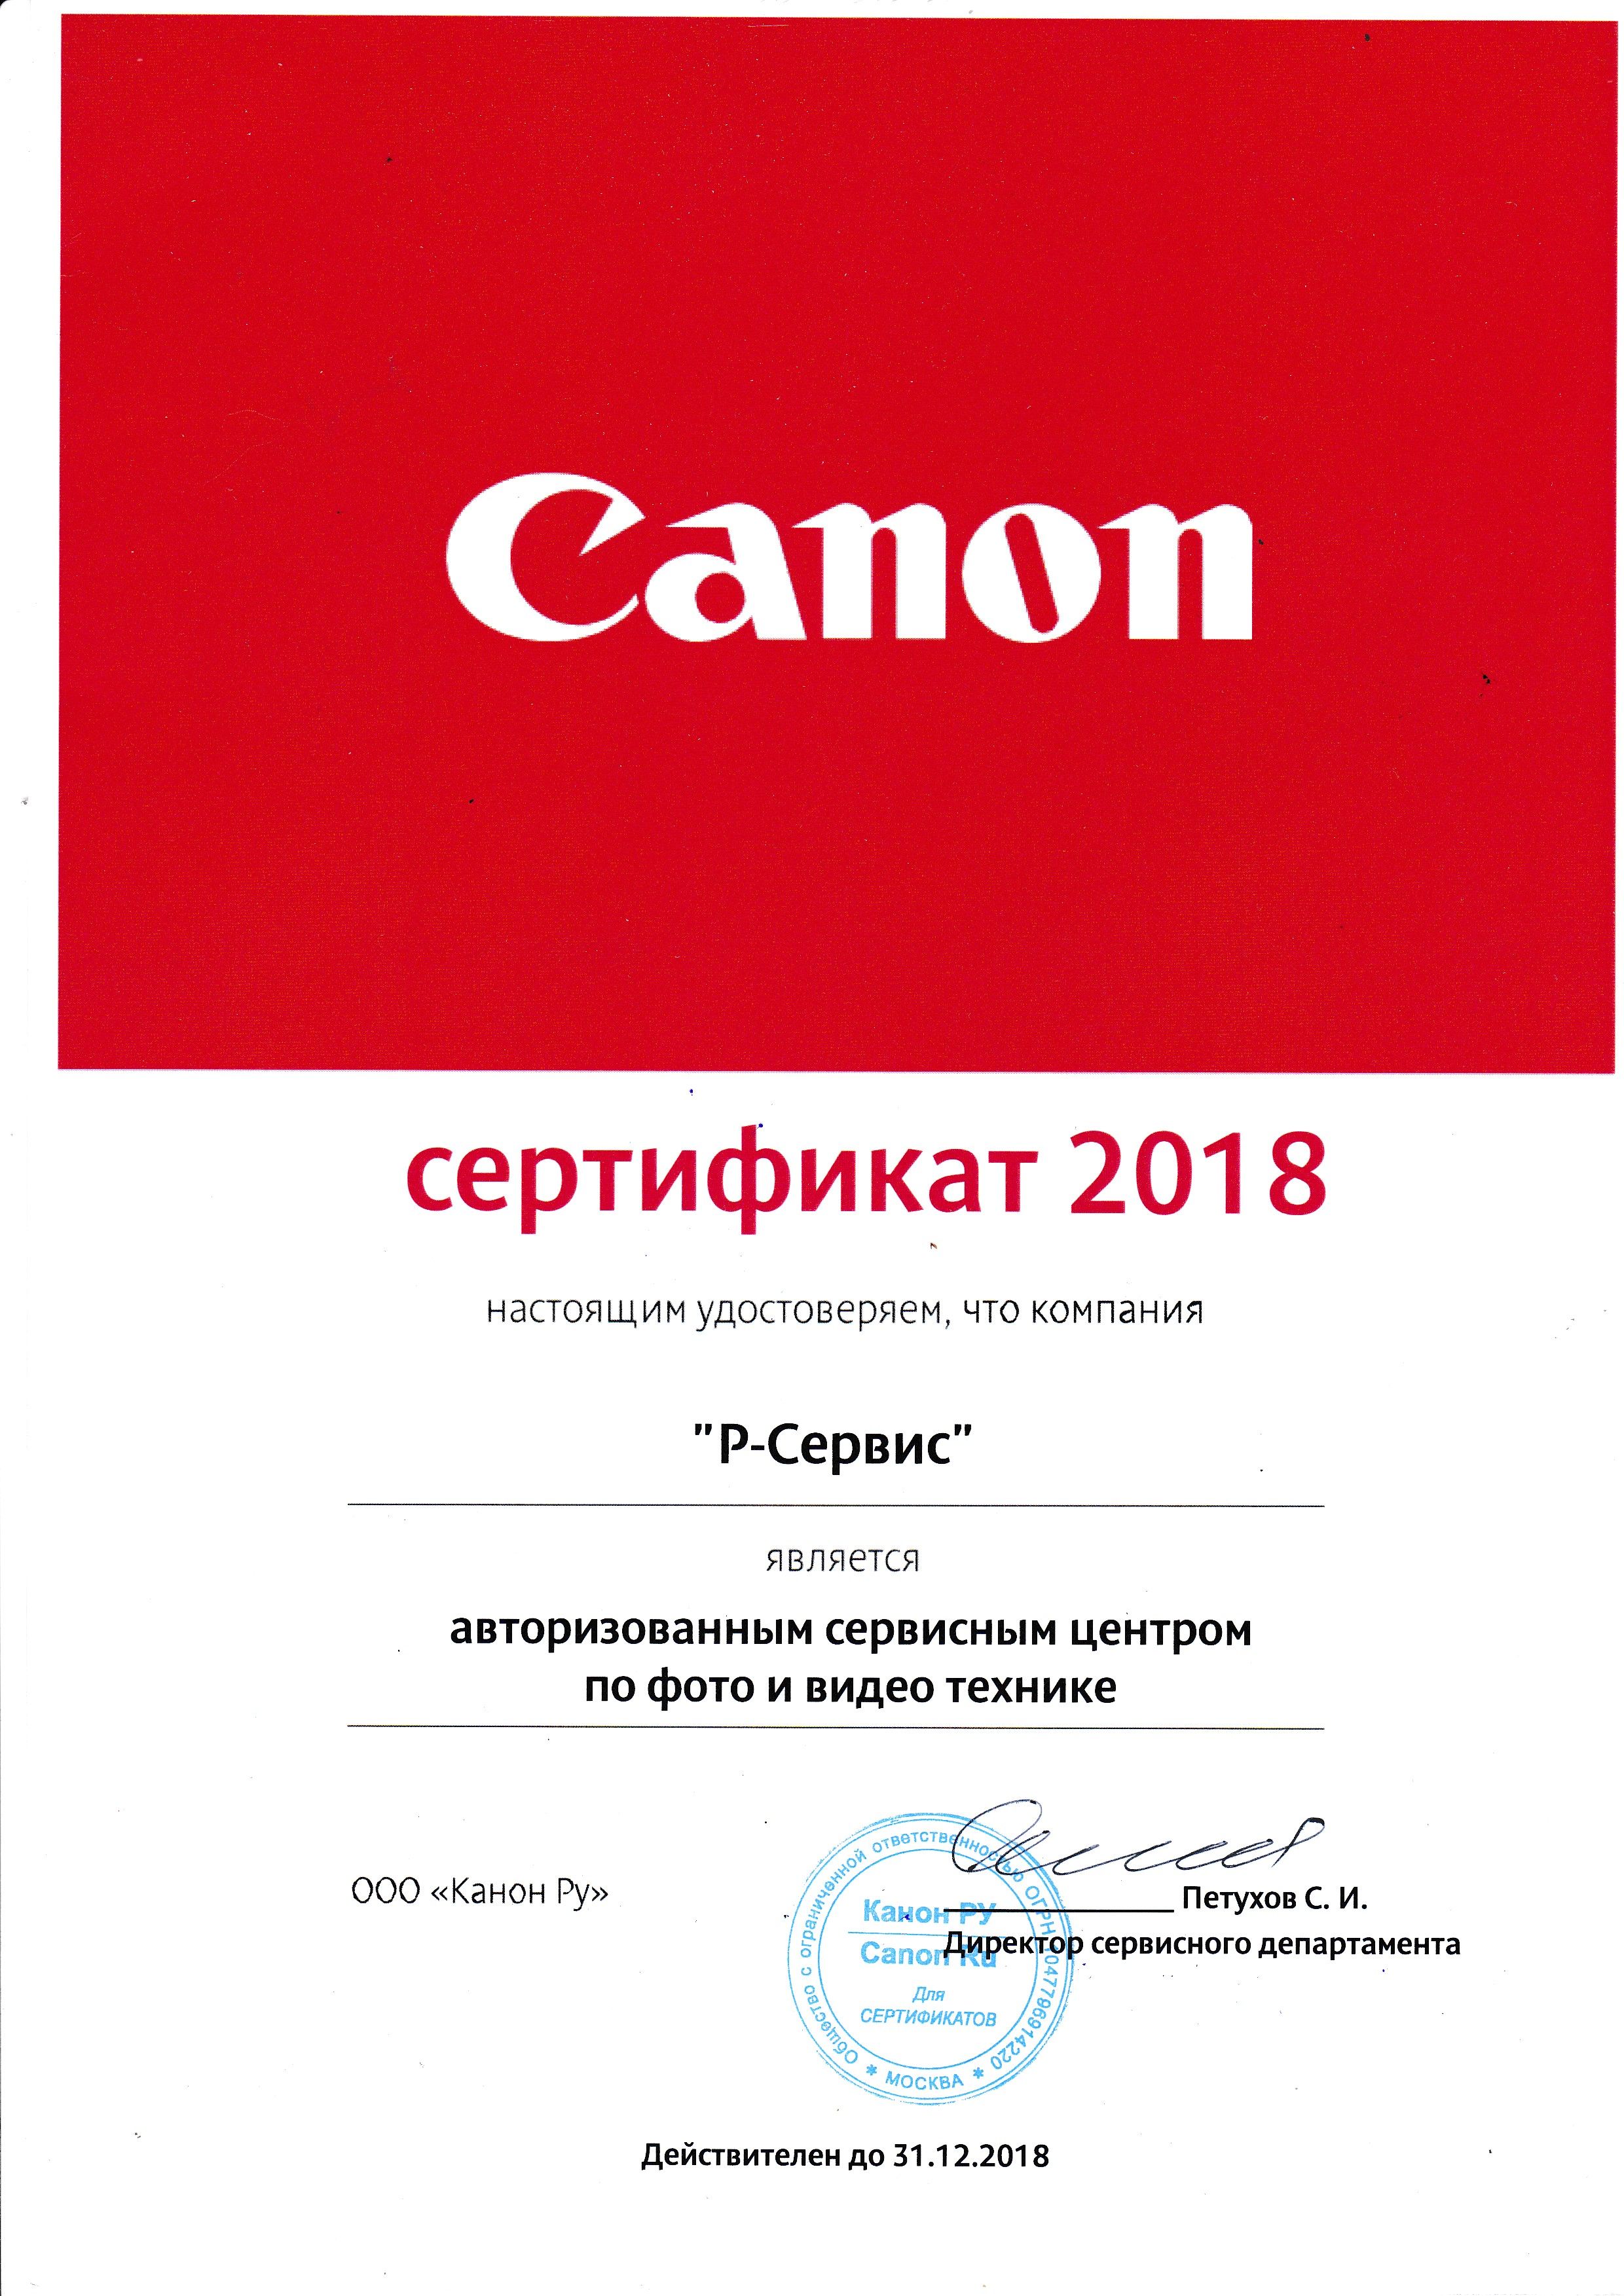 Canon сервисный canon moscow. Сертификат Canon. Сертификат сервисного центра Canon. Сертификат авторизованного сервисного центра. Сертификация сервисный центр.